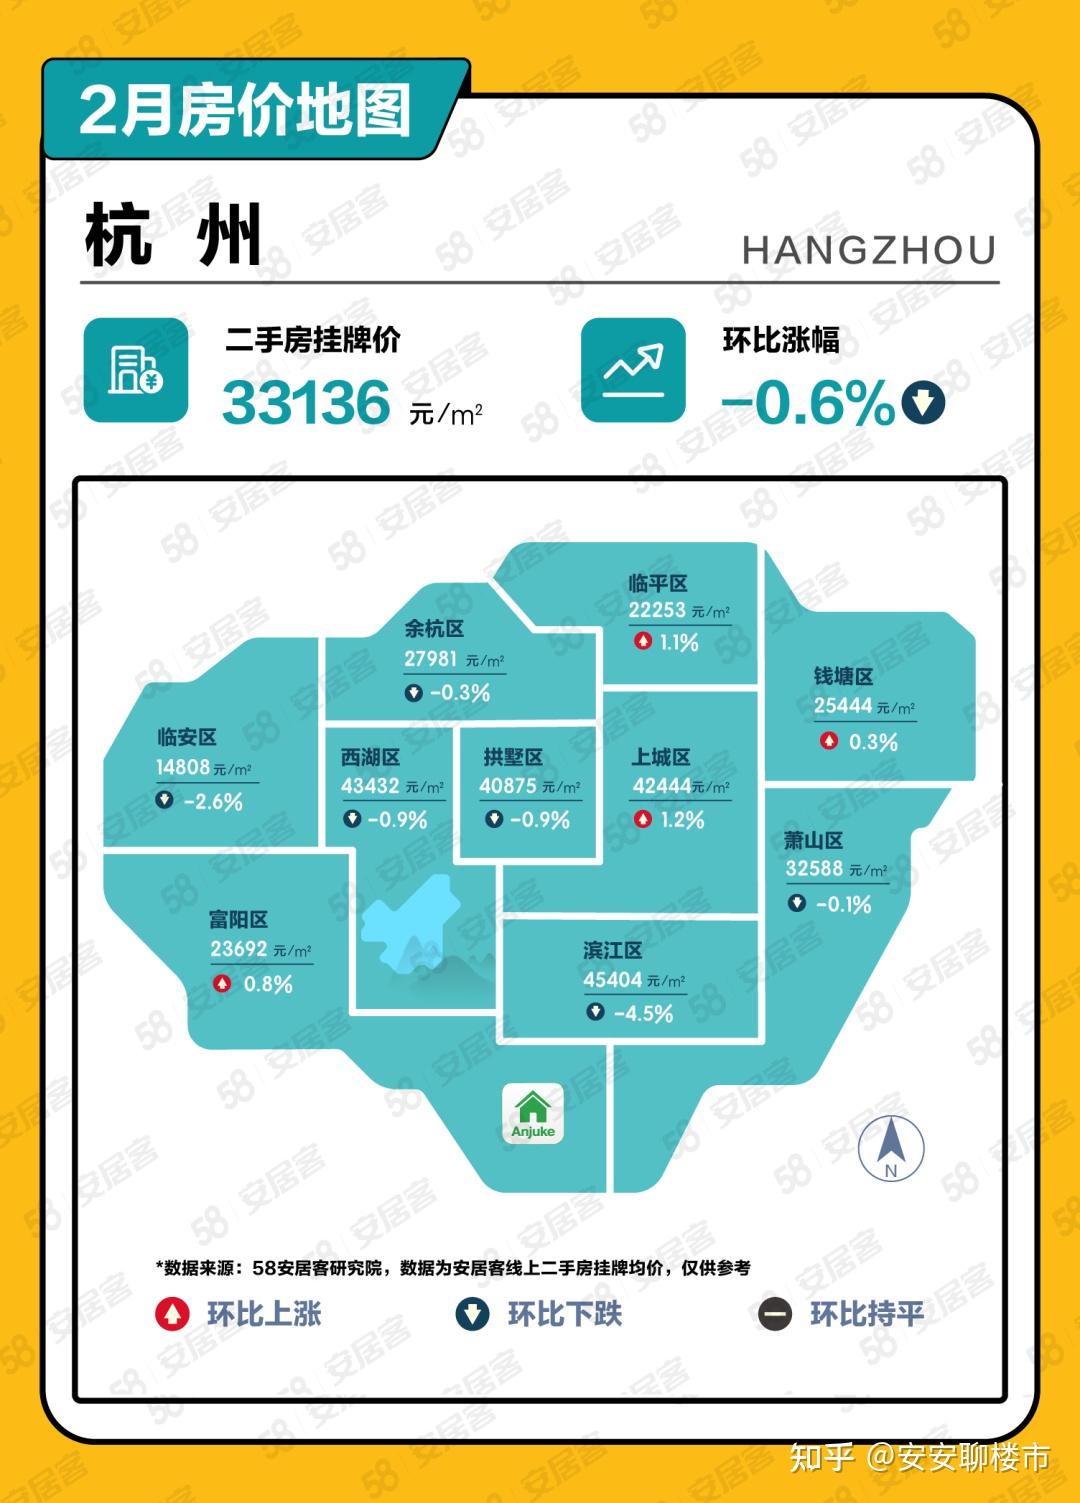 杭州发布房产新规,「在本市范围内购买二手住房,不再审核购房人资格」